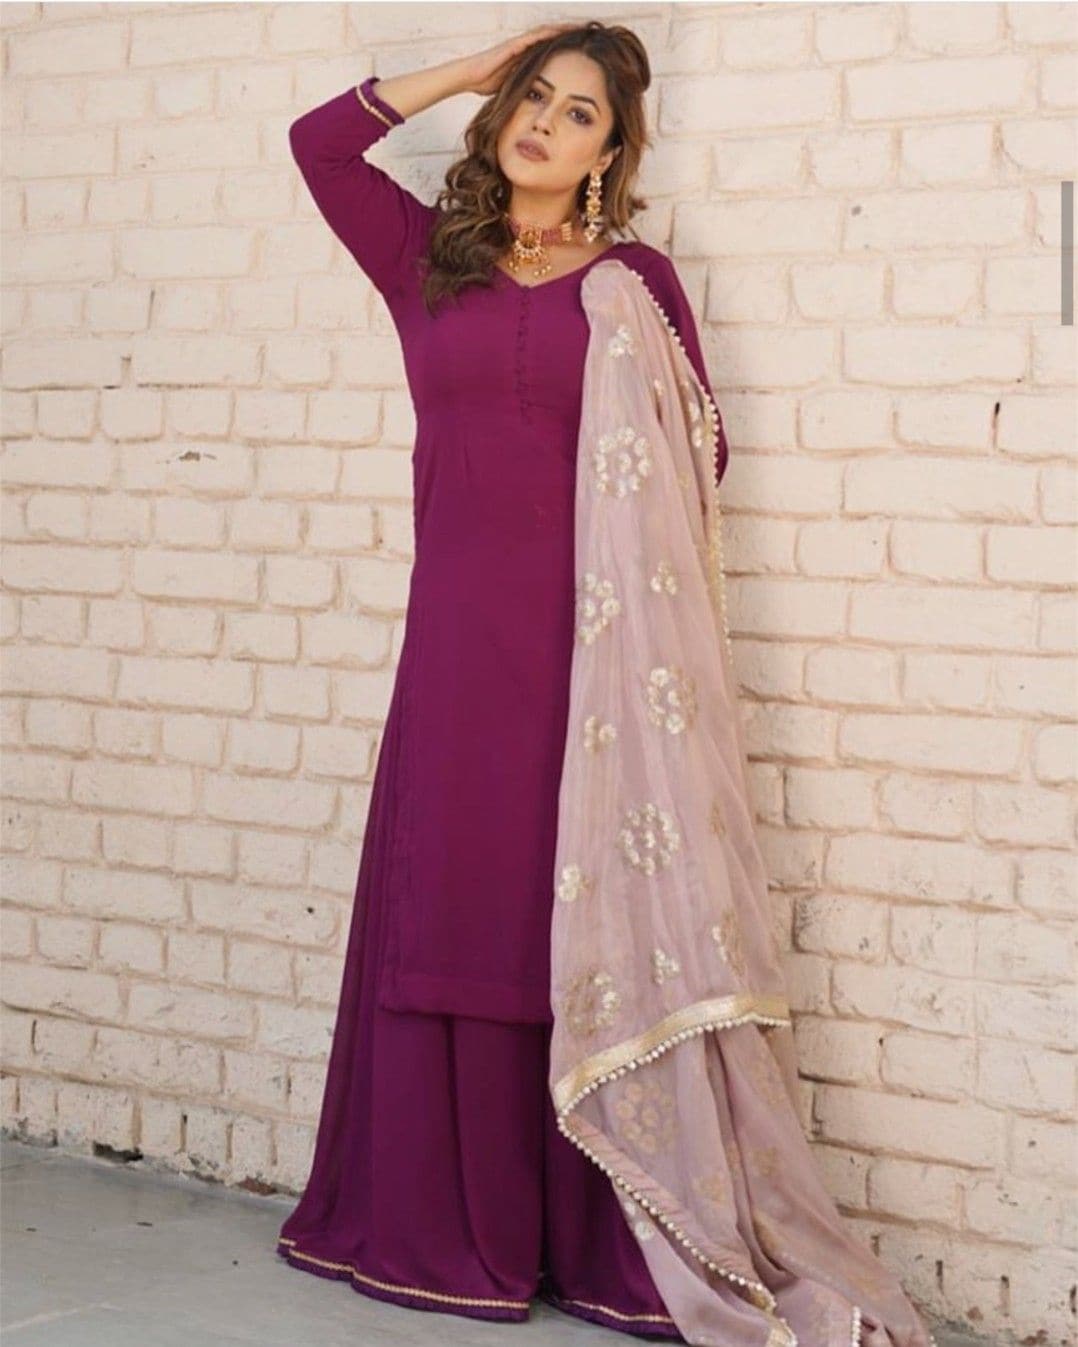 Our Punjabi kudi looks stunning in a purple kurta and palazzo set.(pinterest)